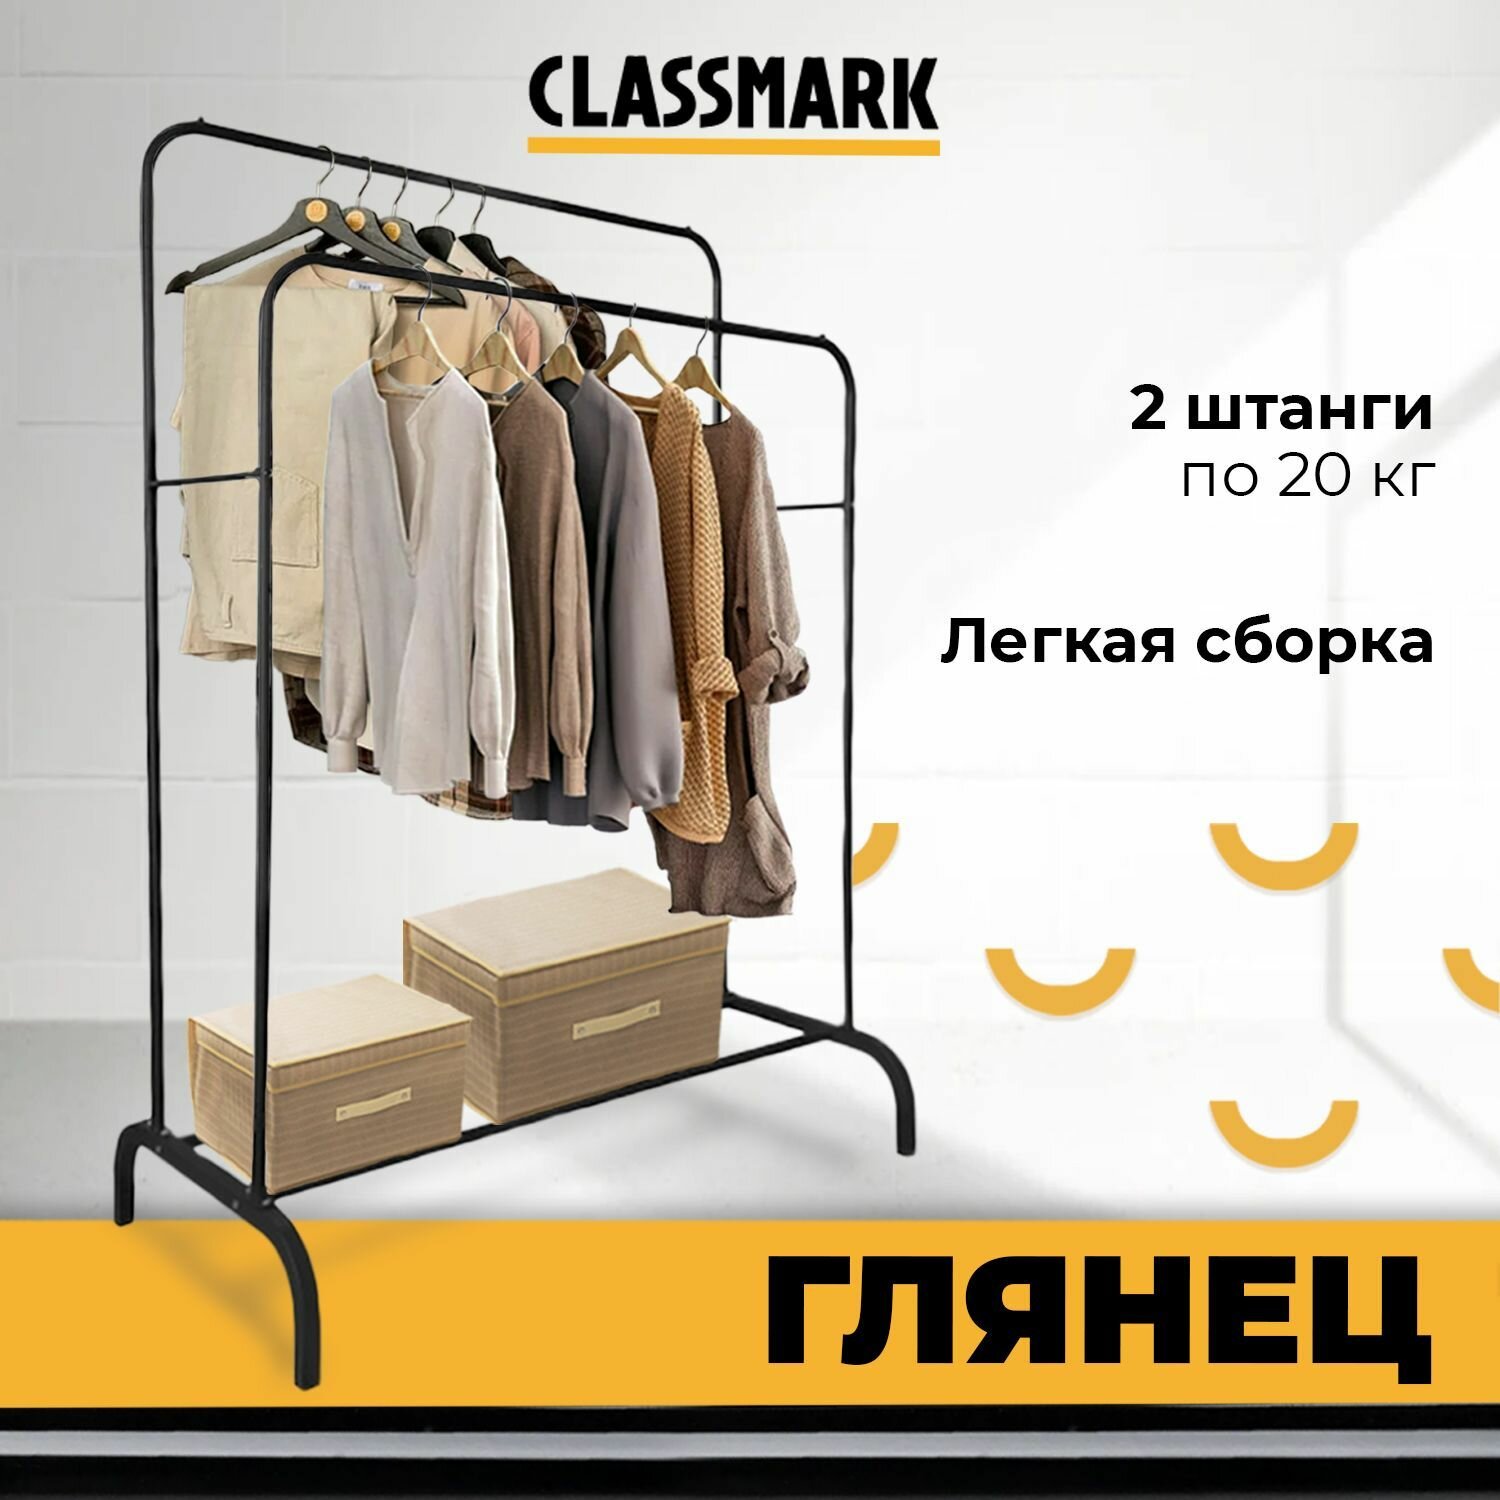 Вешалка Classmark напольная для одежды металлическая стойка с перекладинами и полкой